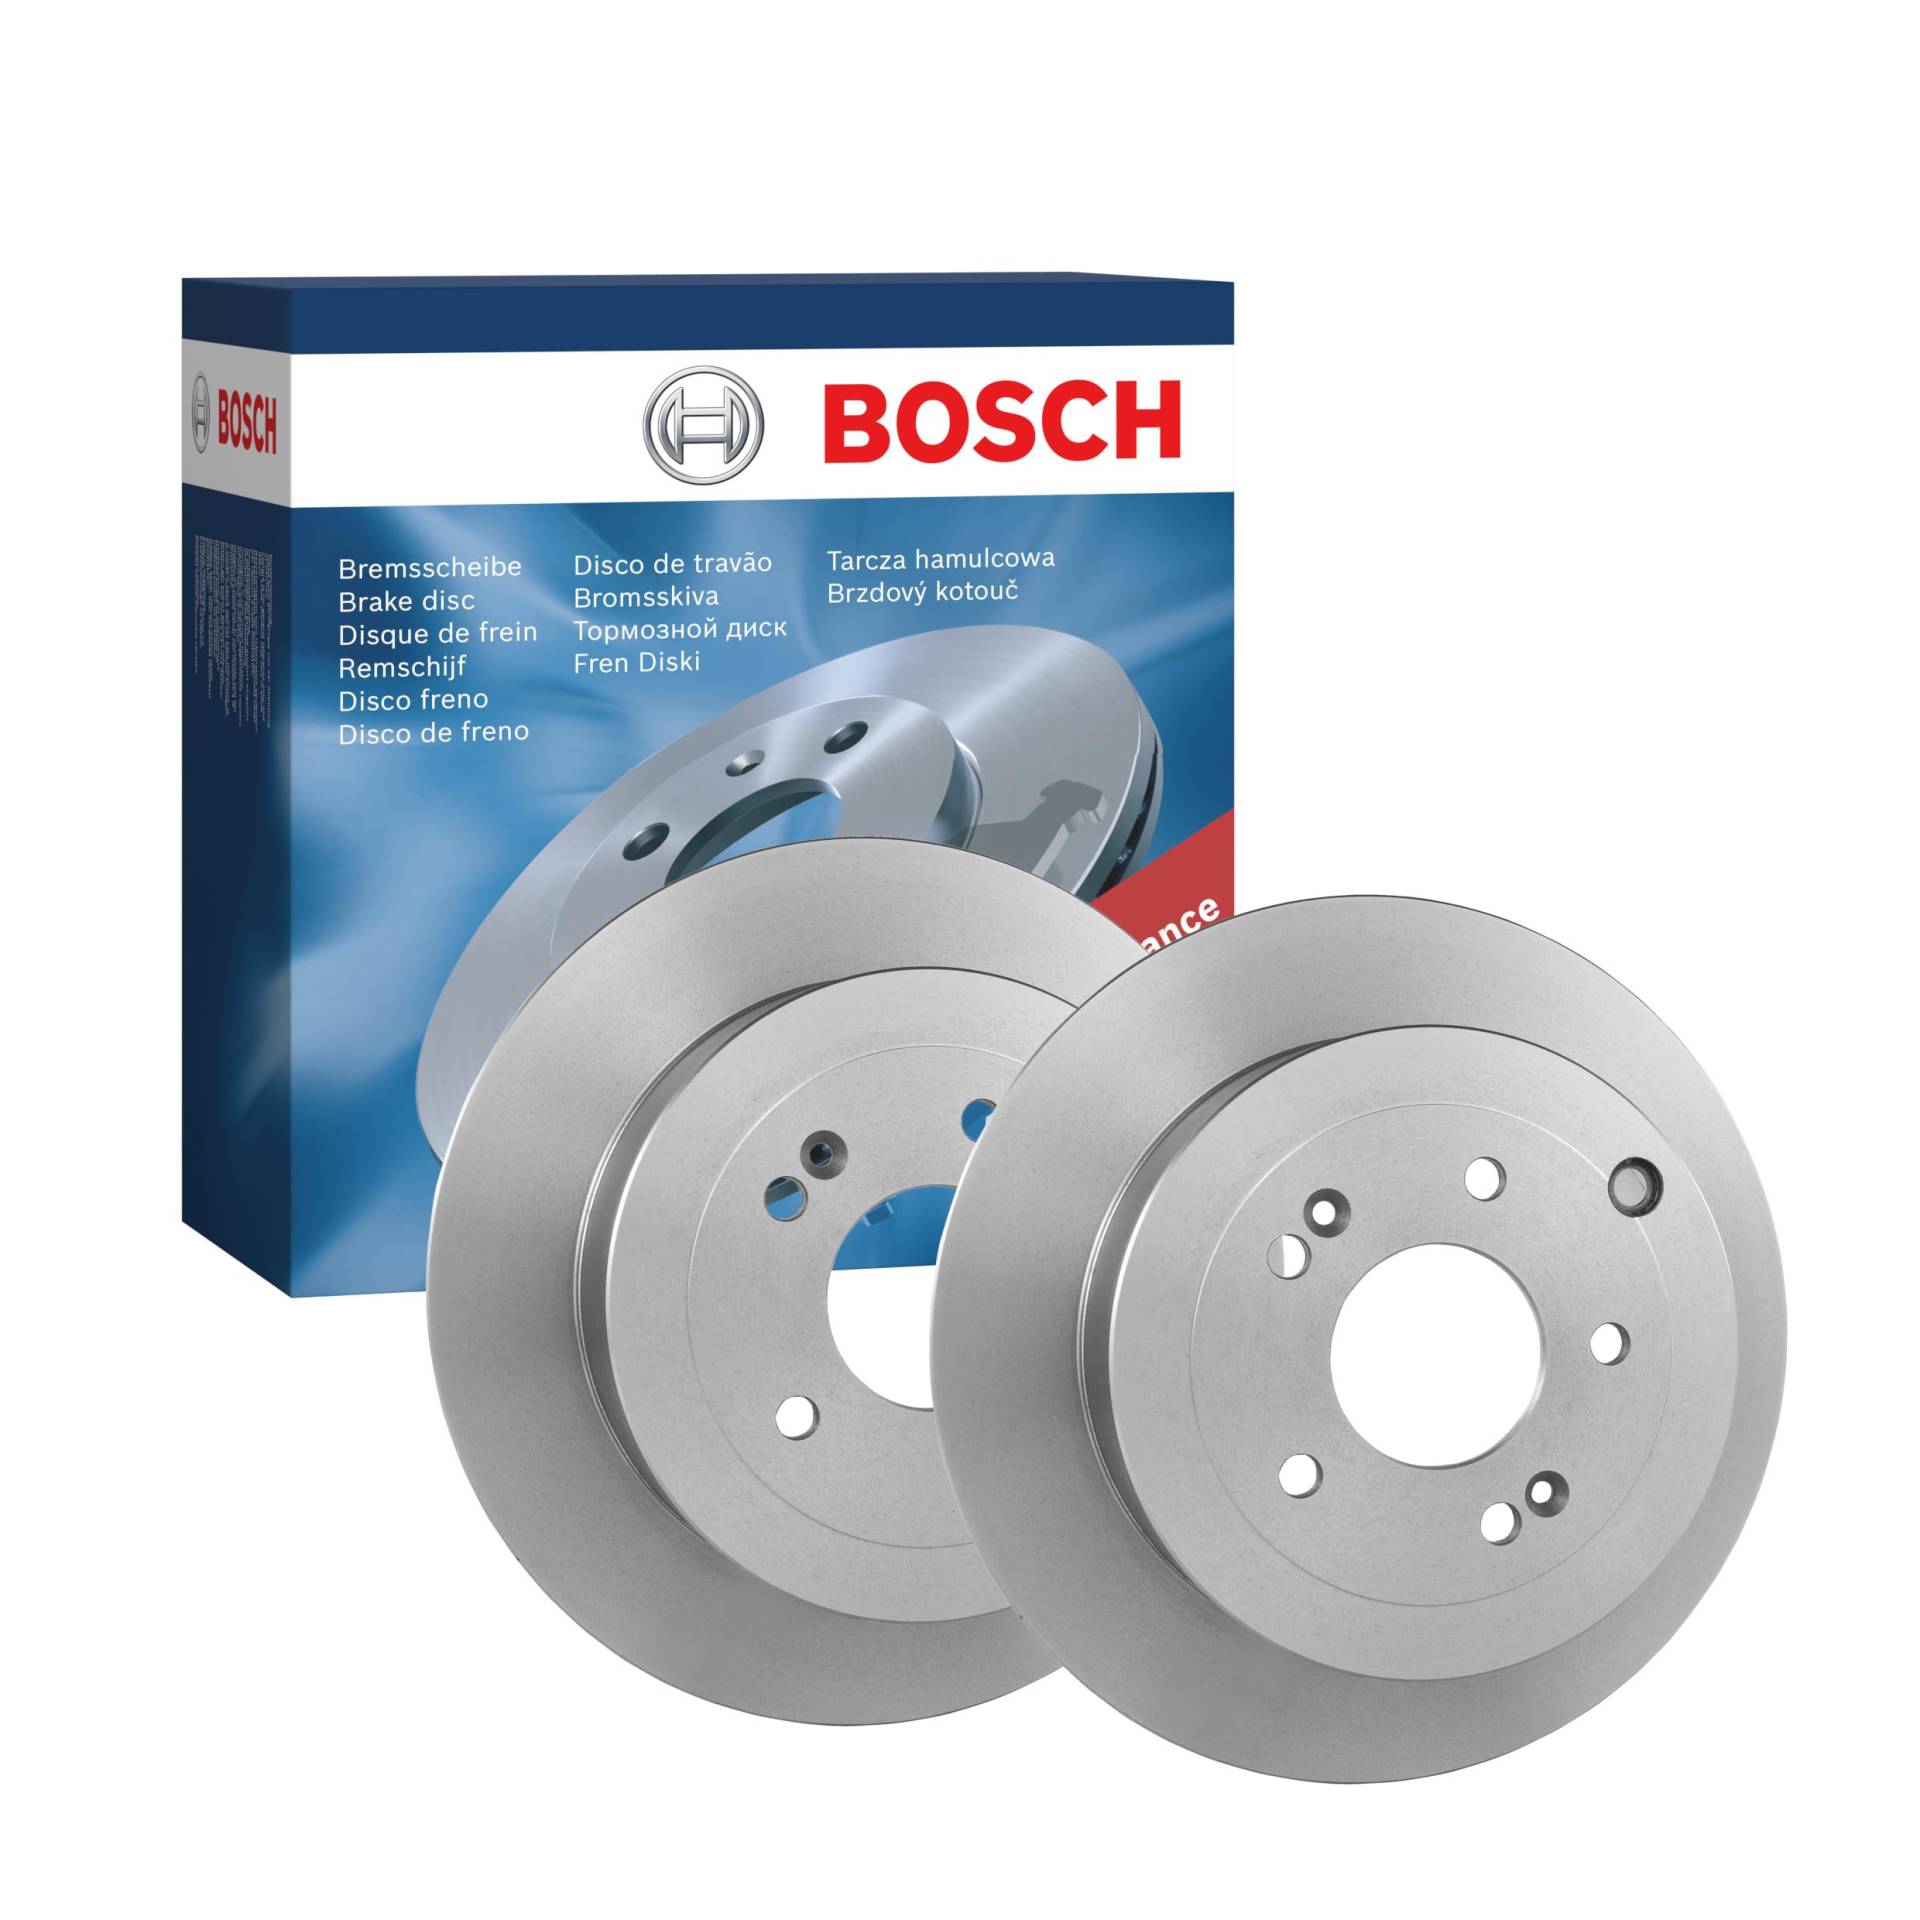 Bosch BD1365 Bremsscheiben - Vorderachse - ECE-R90 Zertifizierung - zwei Bremsscheiben pro Set von Bosch Automotive